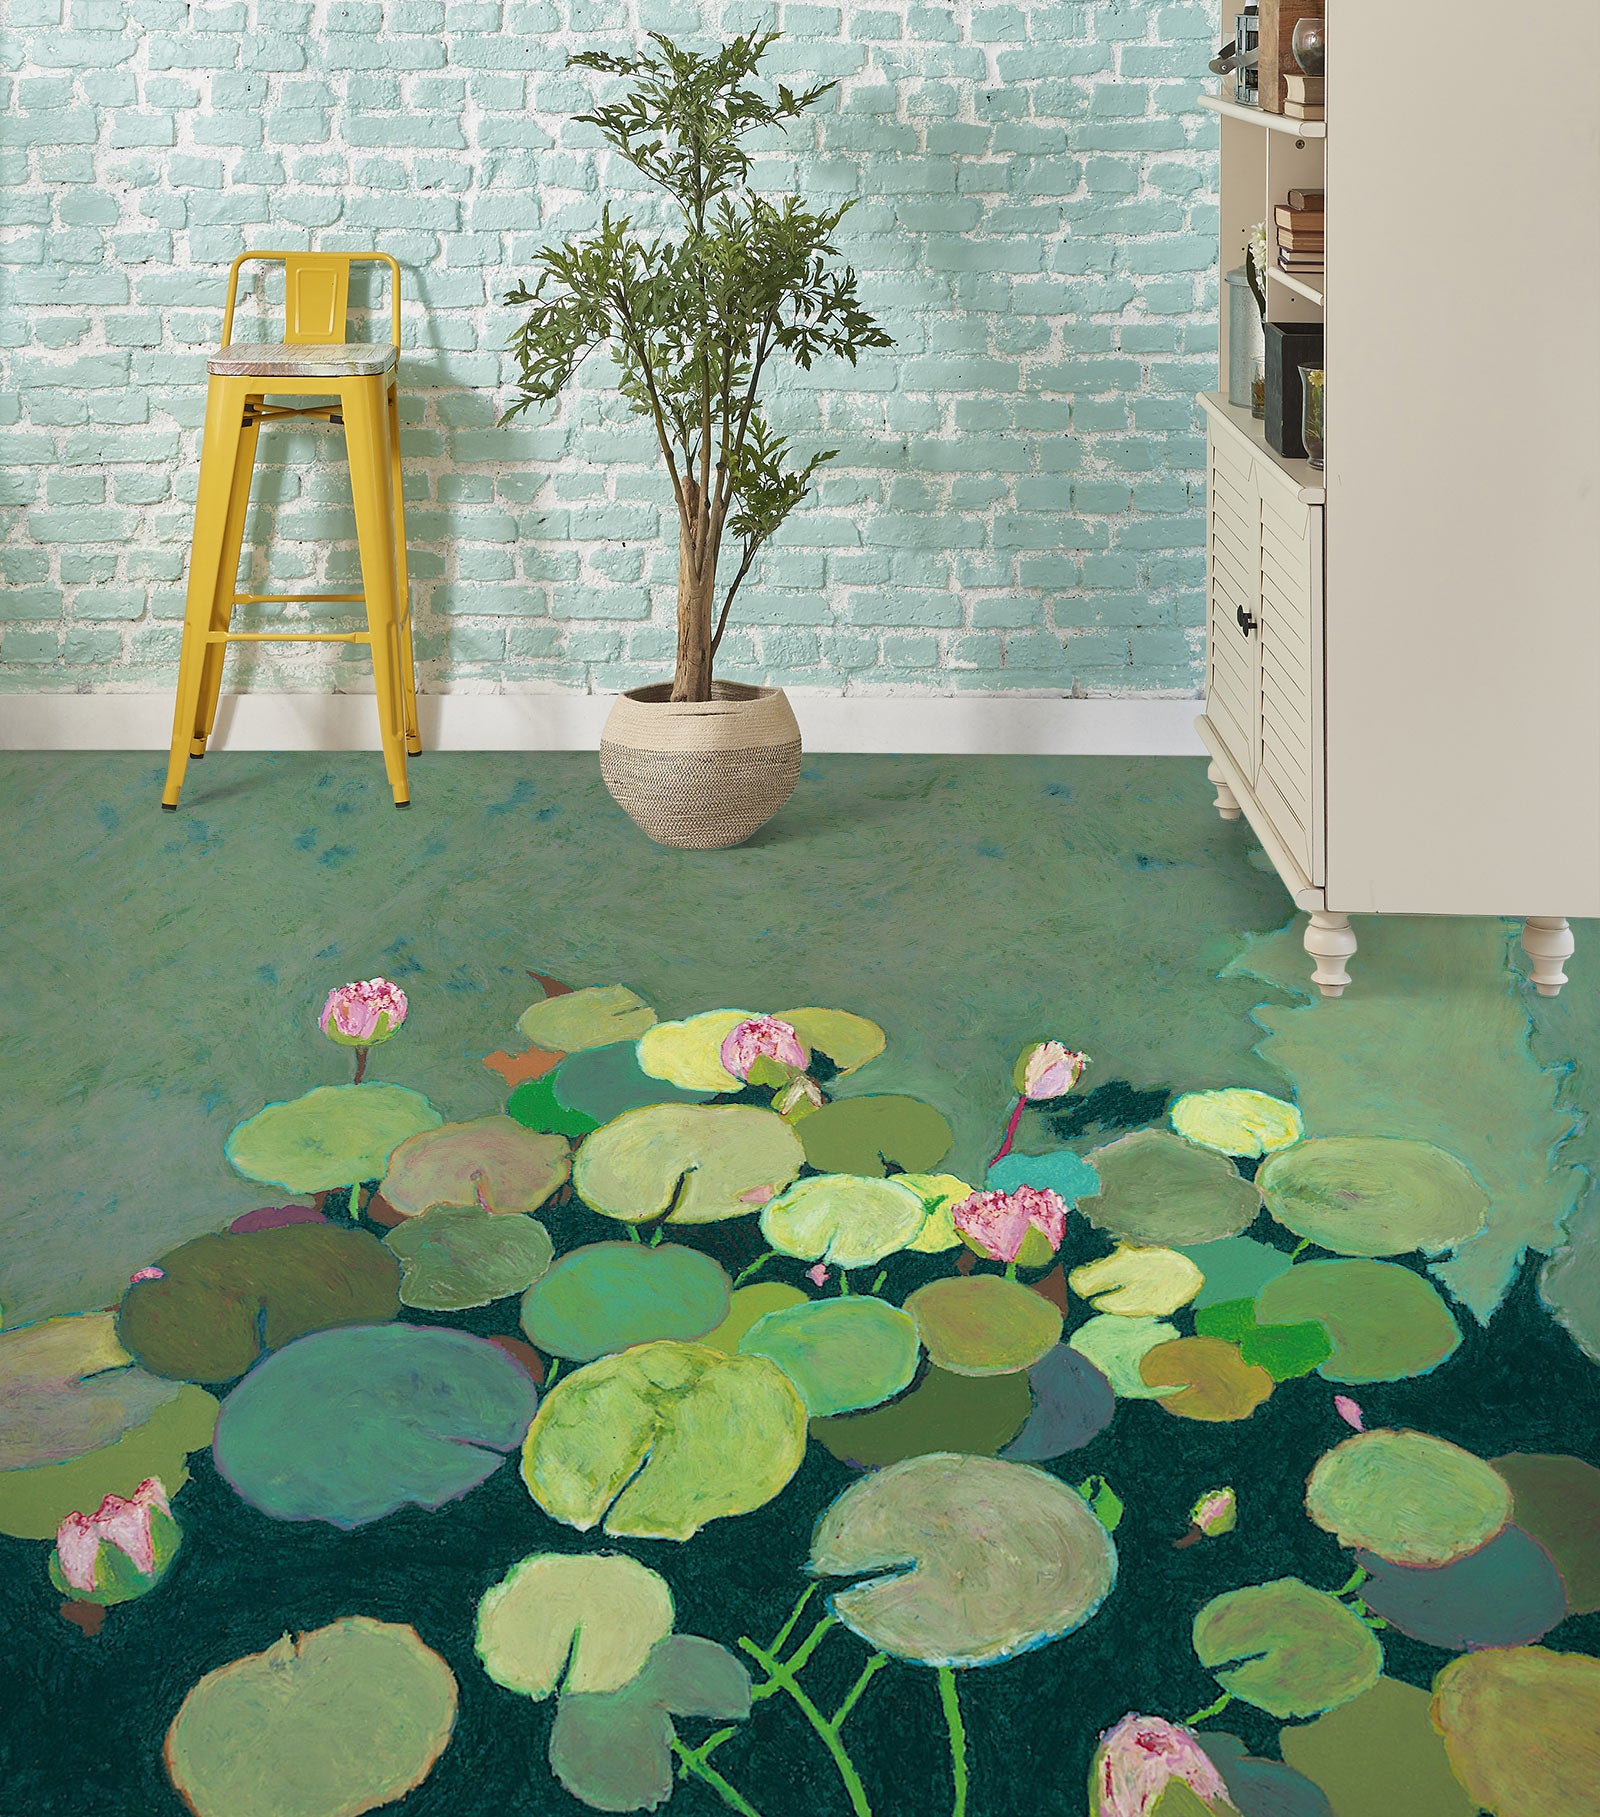 3D Lotus Pond 9686 Allan P. Friedlander Floor Mural